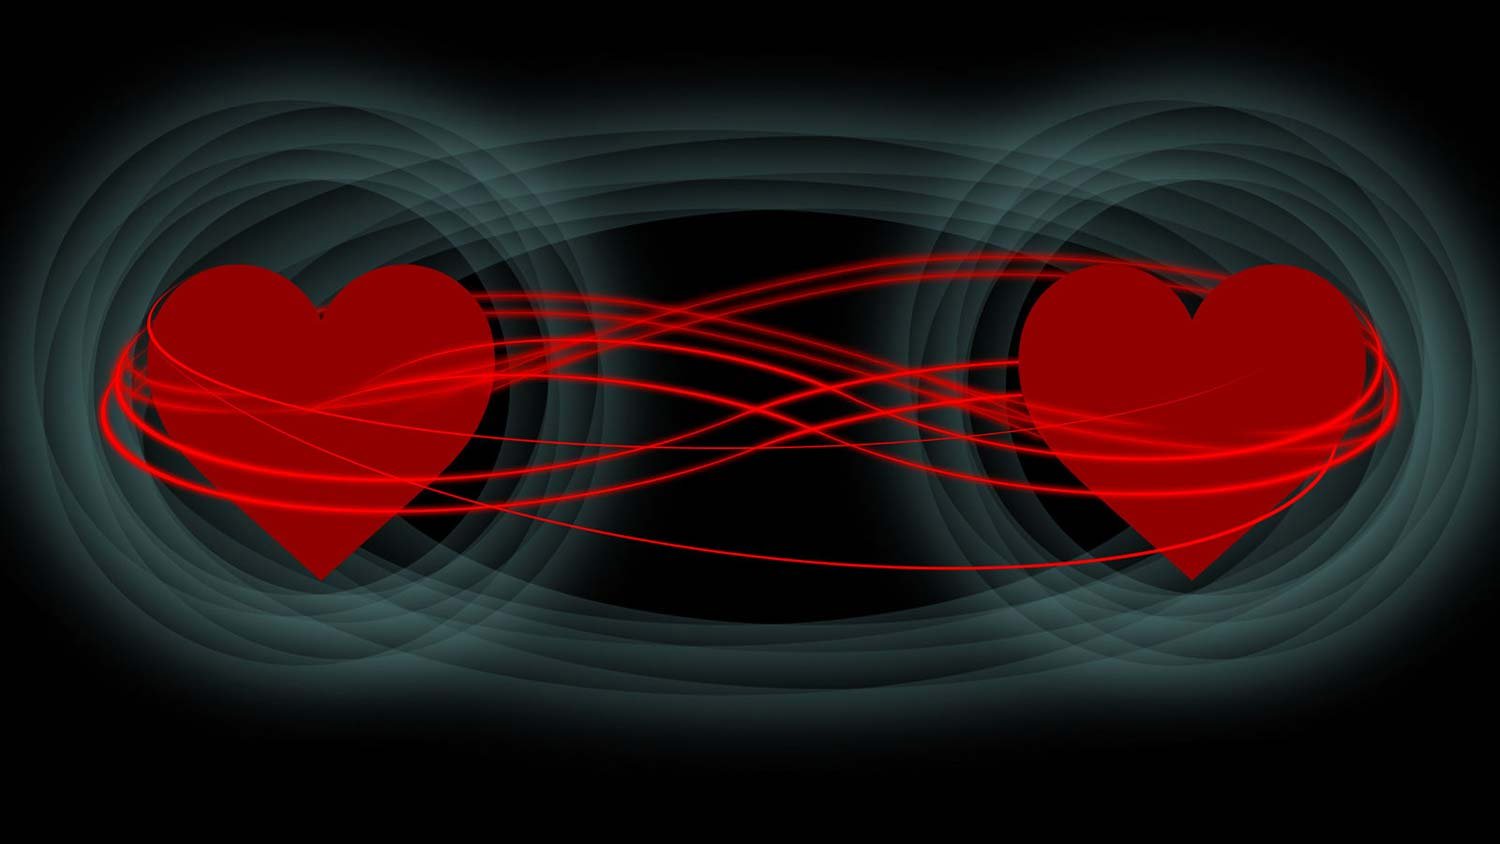 量子未来的技术将使用相同的纠缠粒子